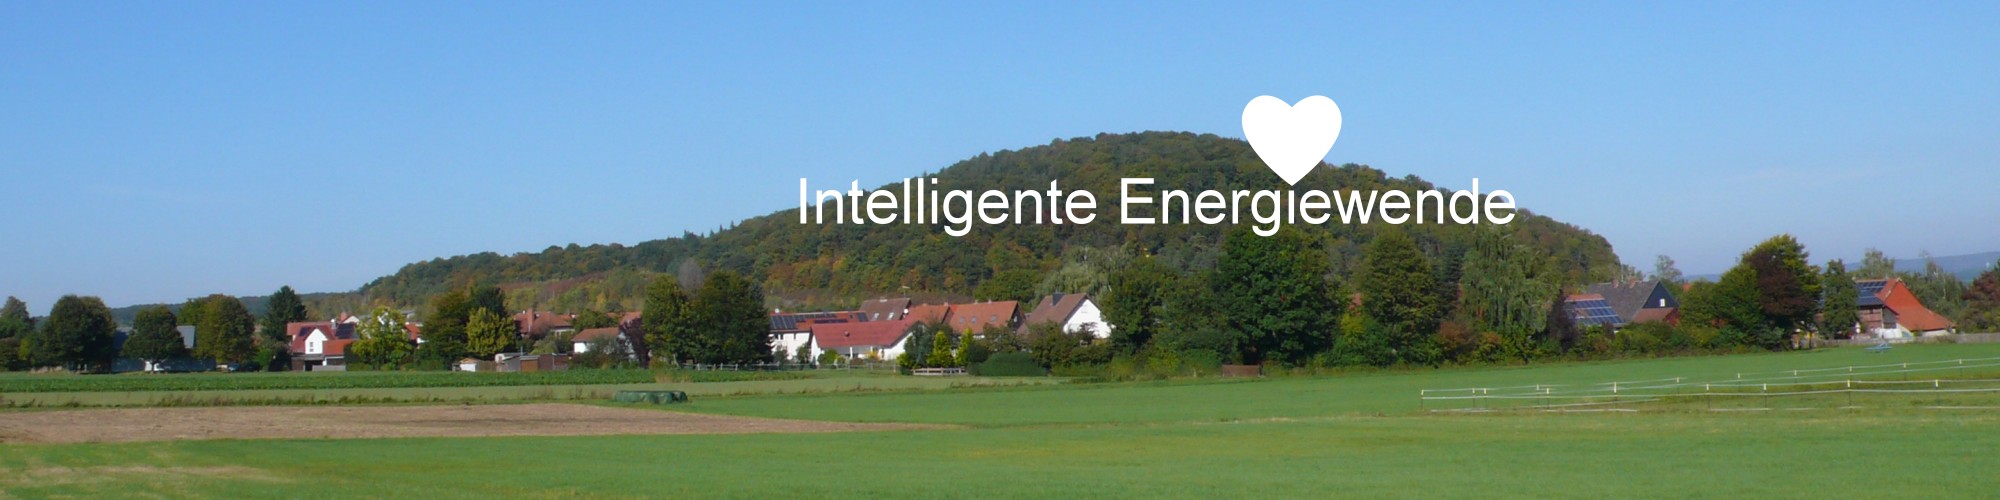 Intelligente Energiewende